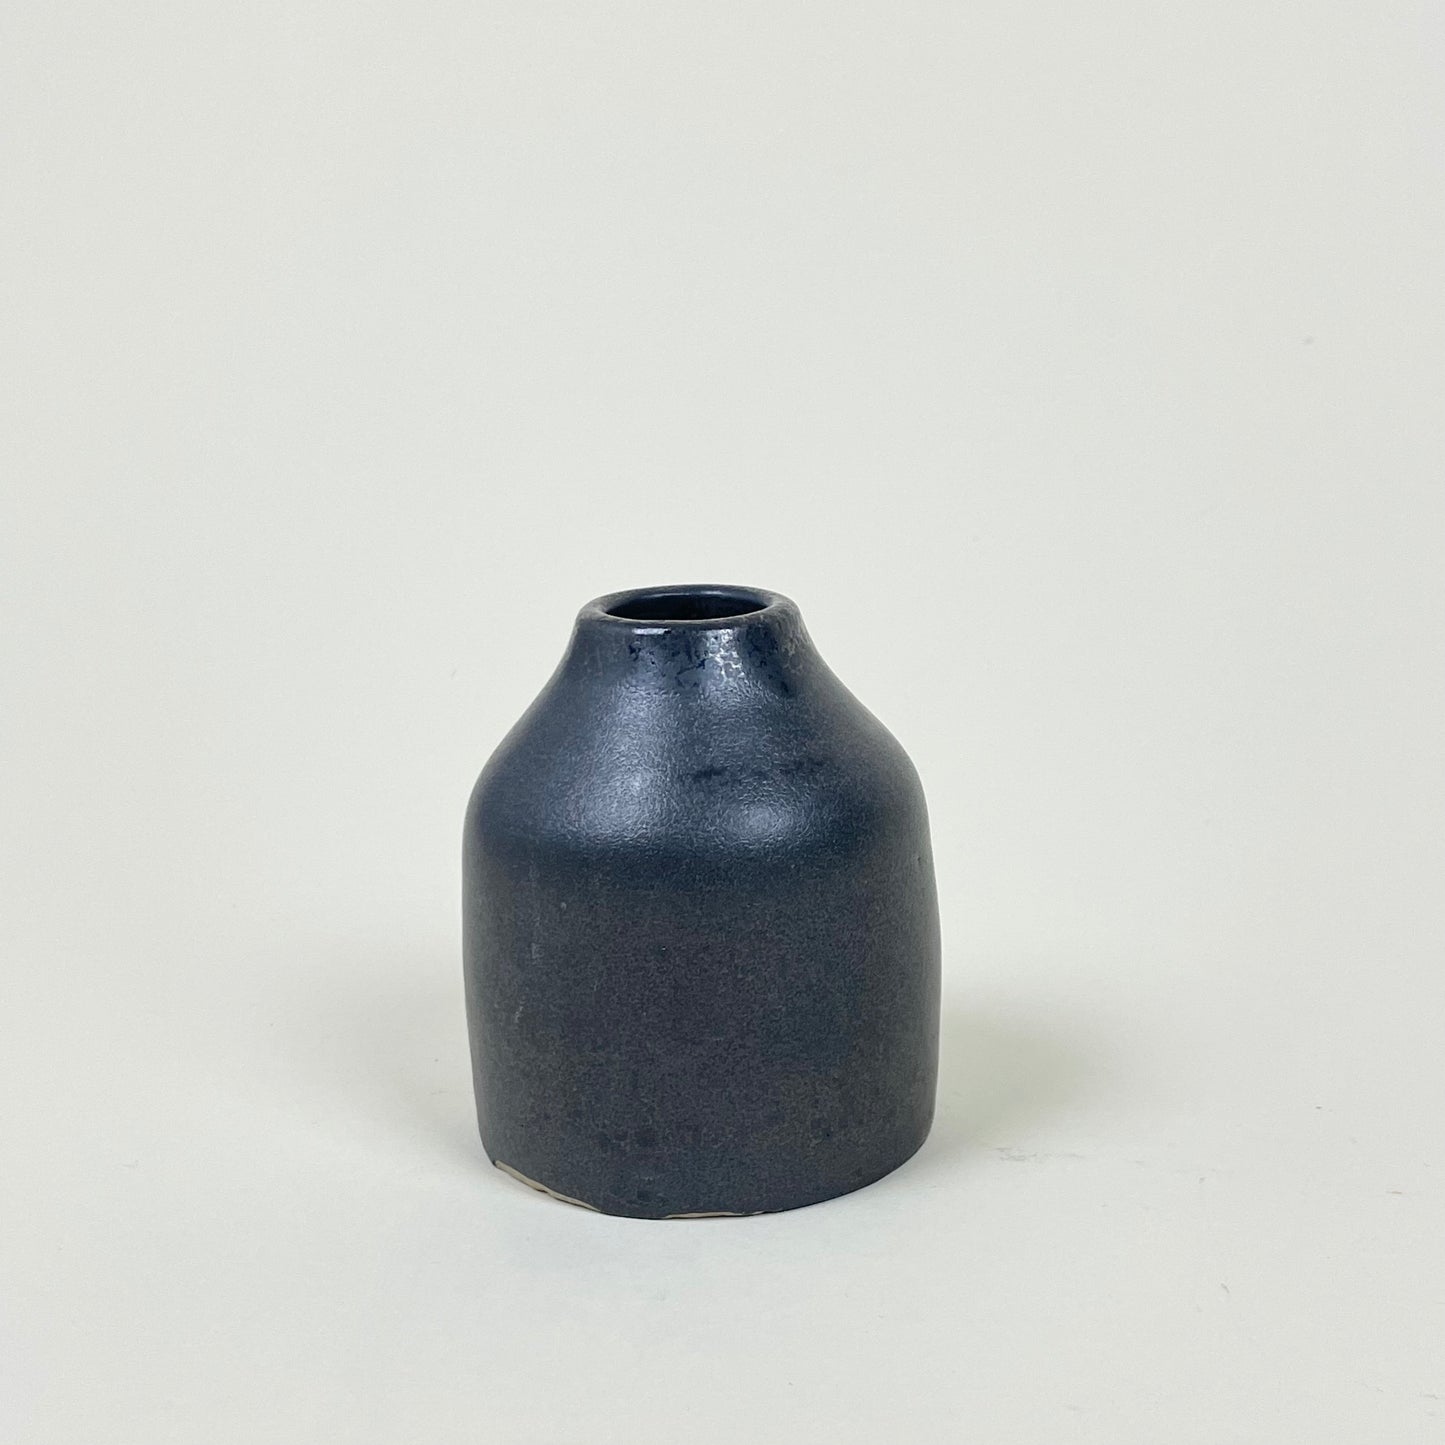 Ceramic vase by Sonja Lindgren